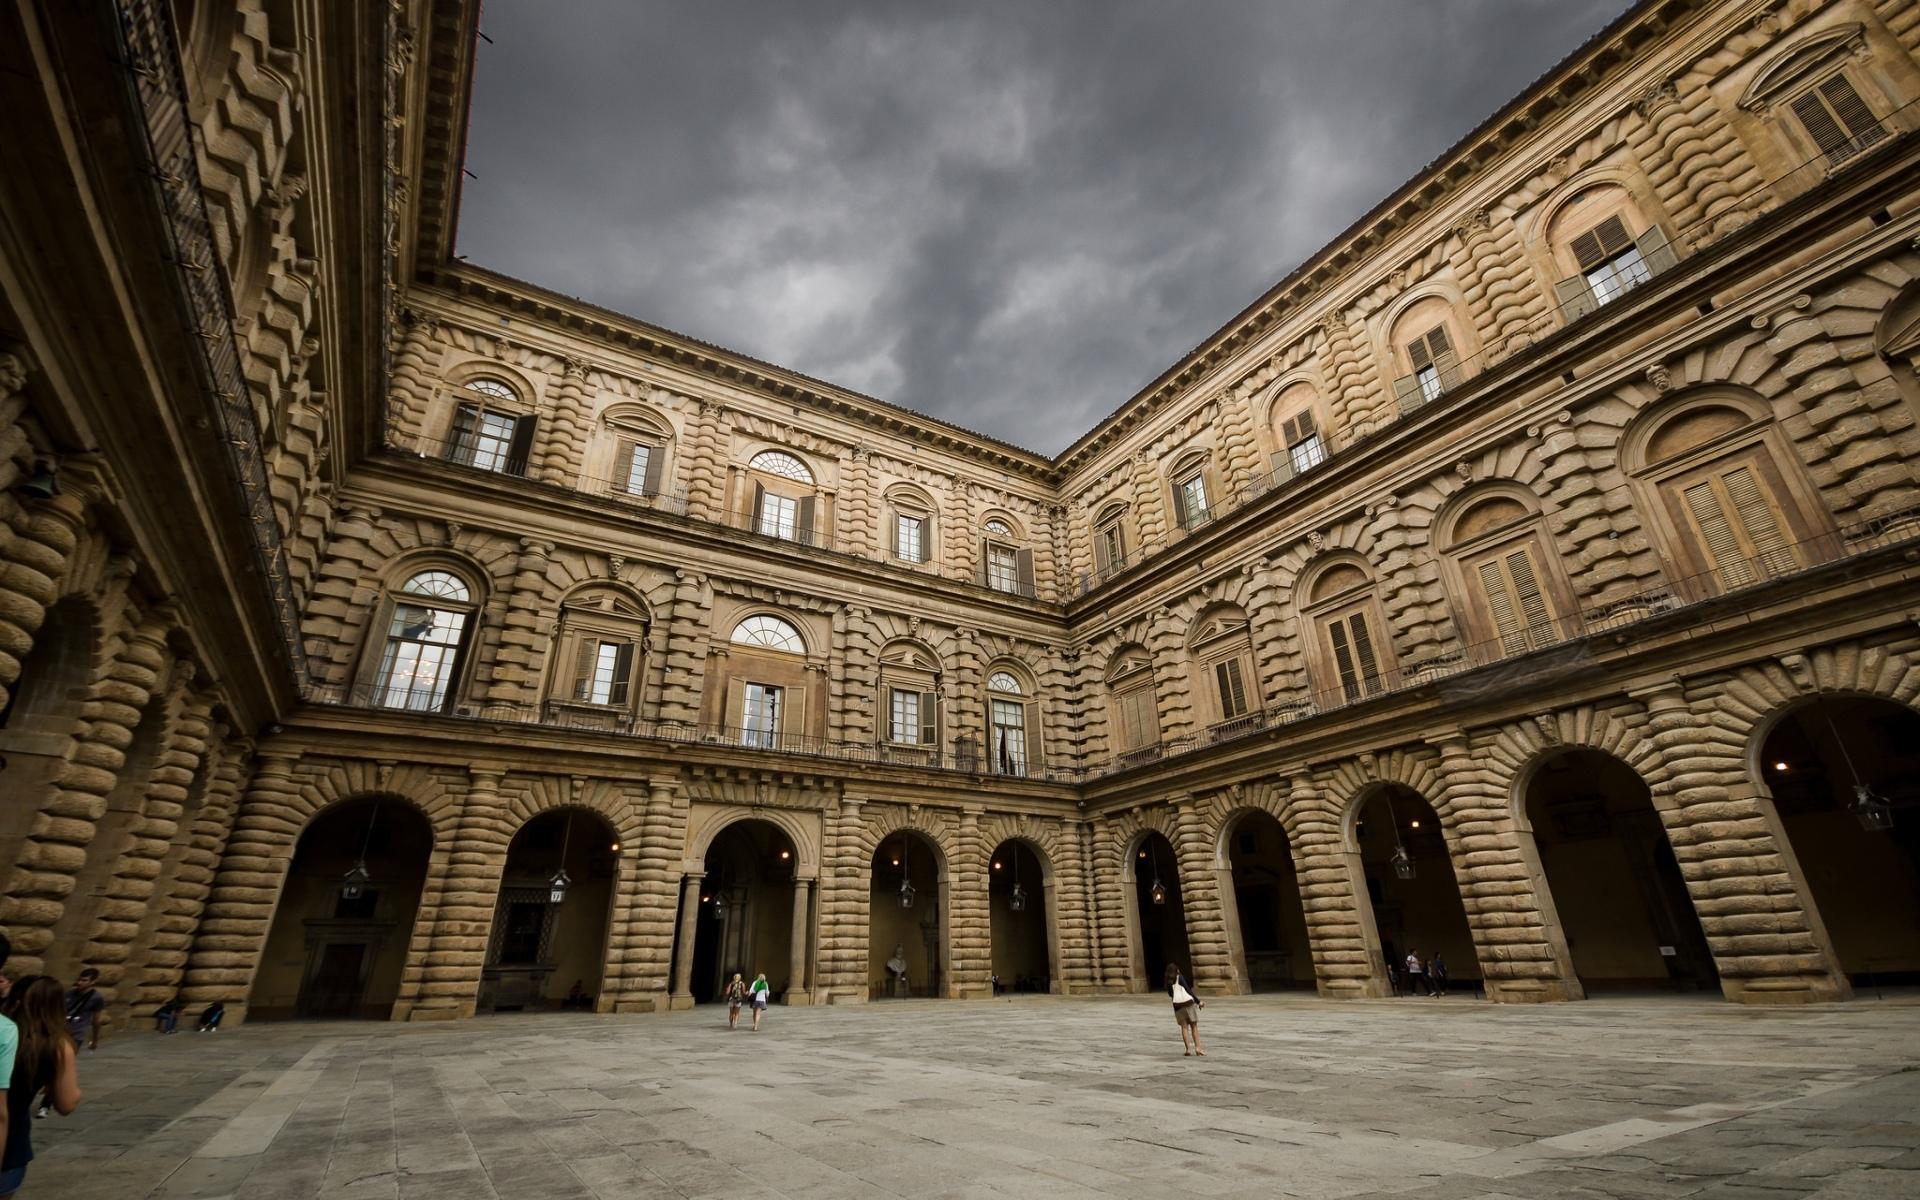 Palazzo Pitti at 1024 x 1024 iPad size wallpapers HD quality